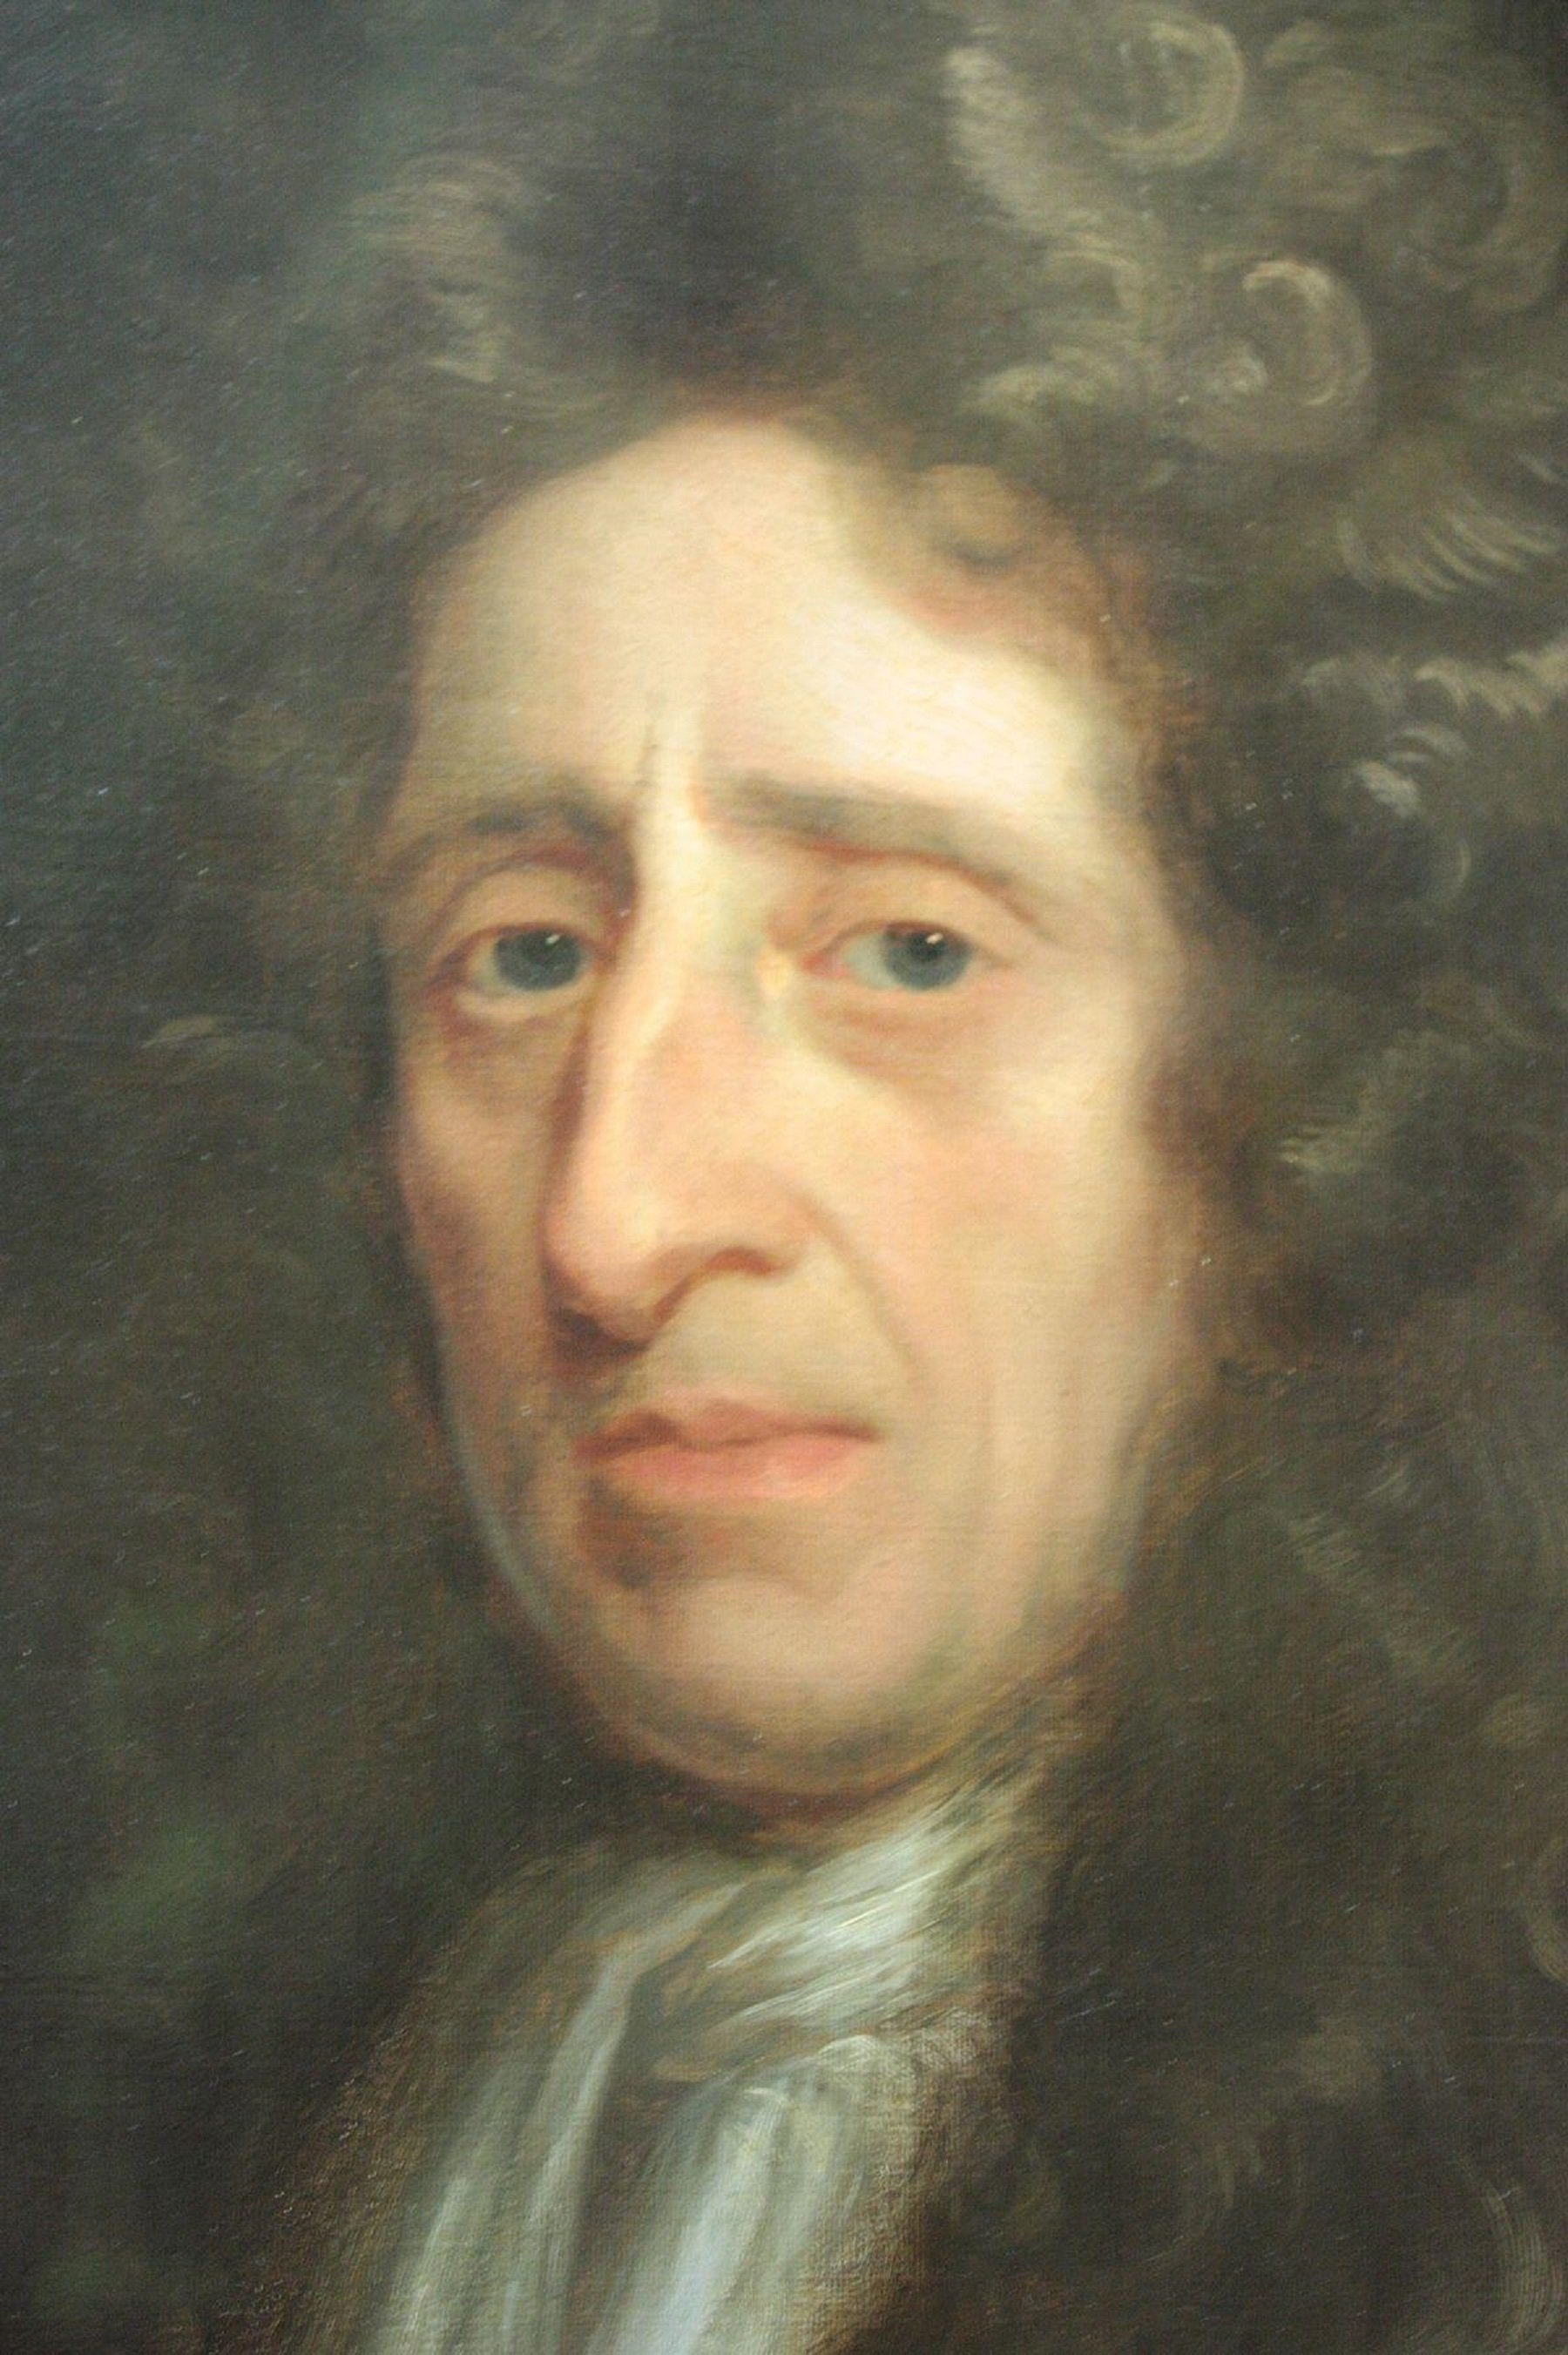 Neix John Locke, el pensador que va inspirar la revolució antiborbònica